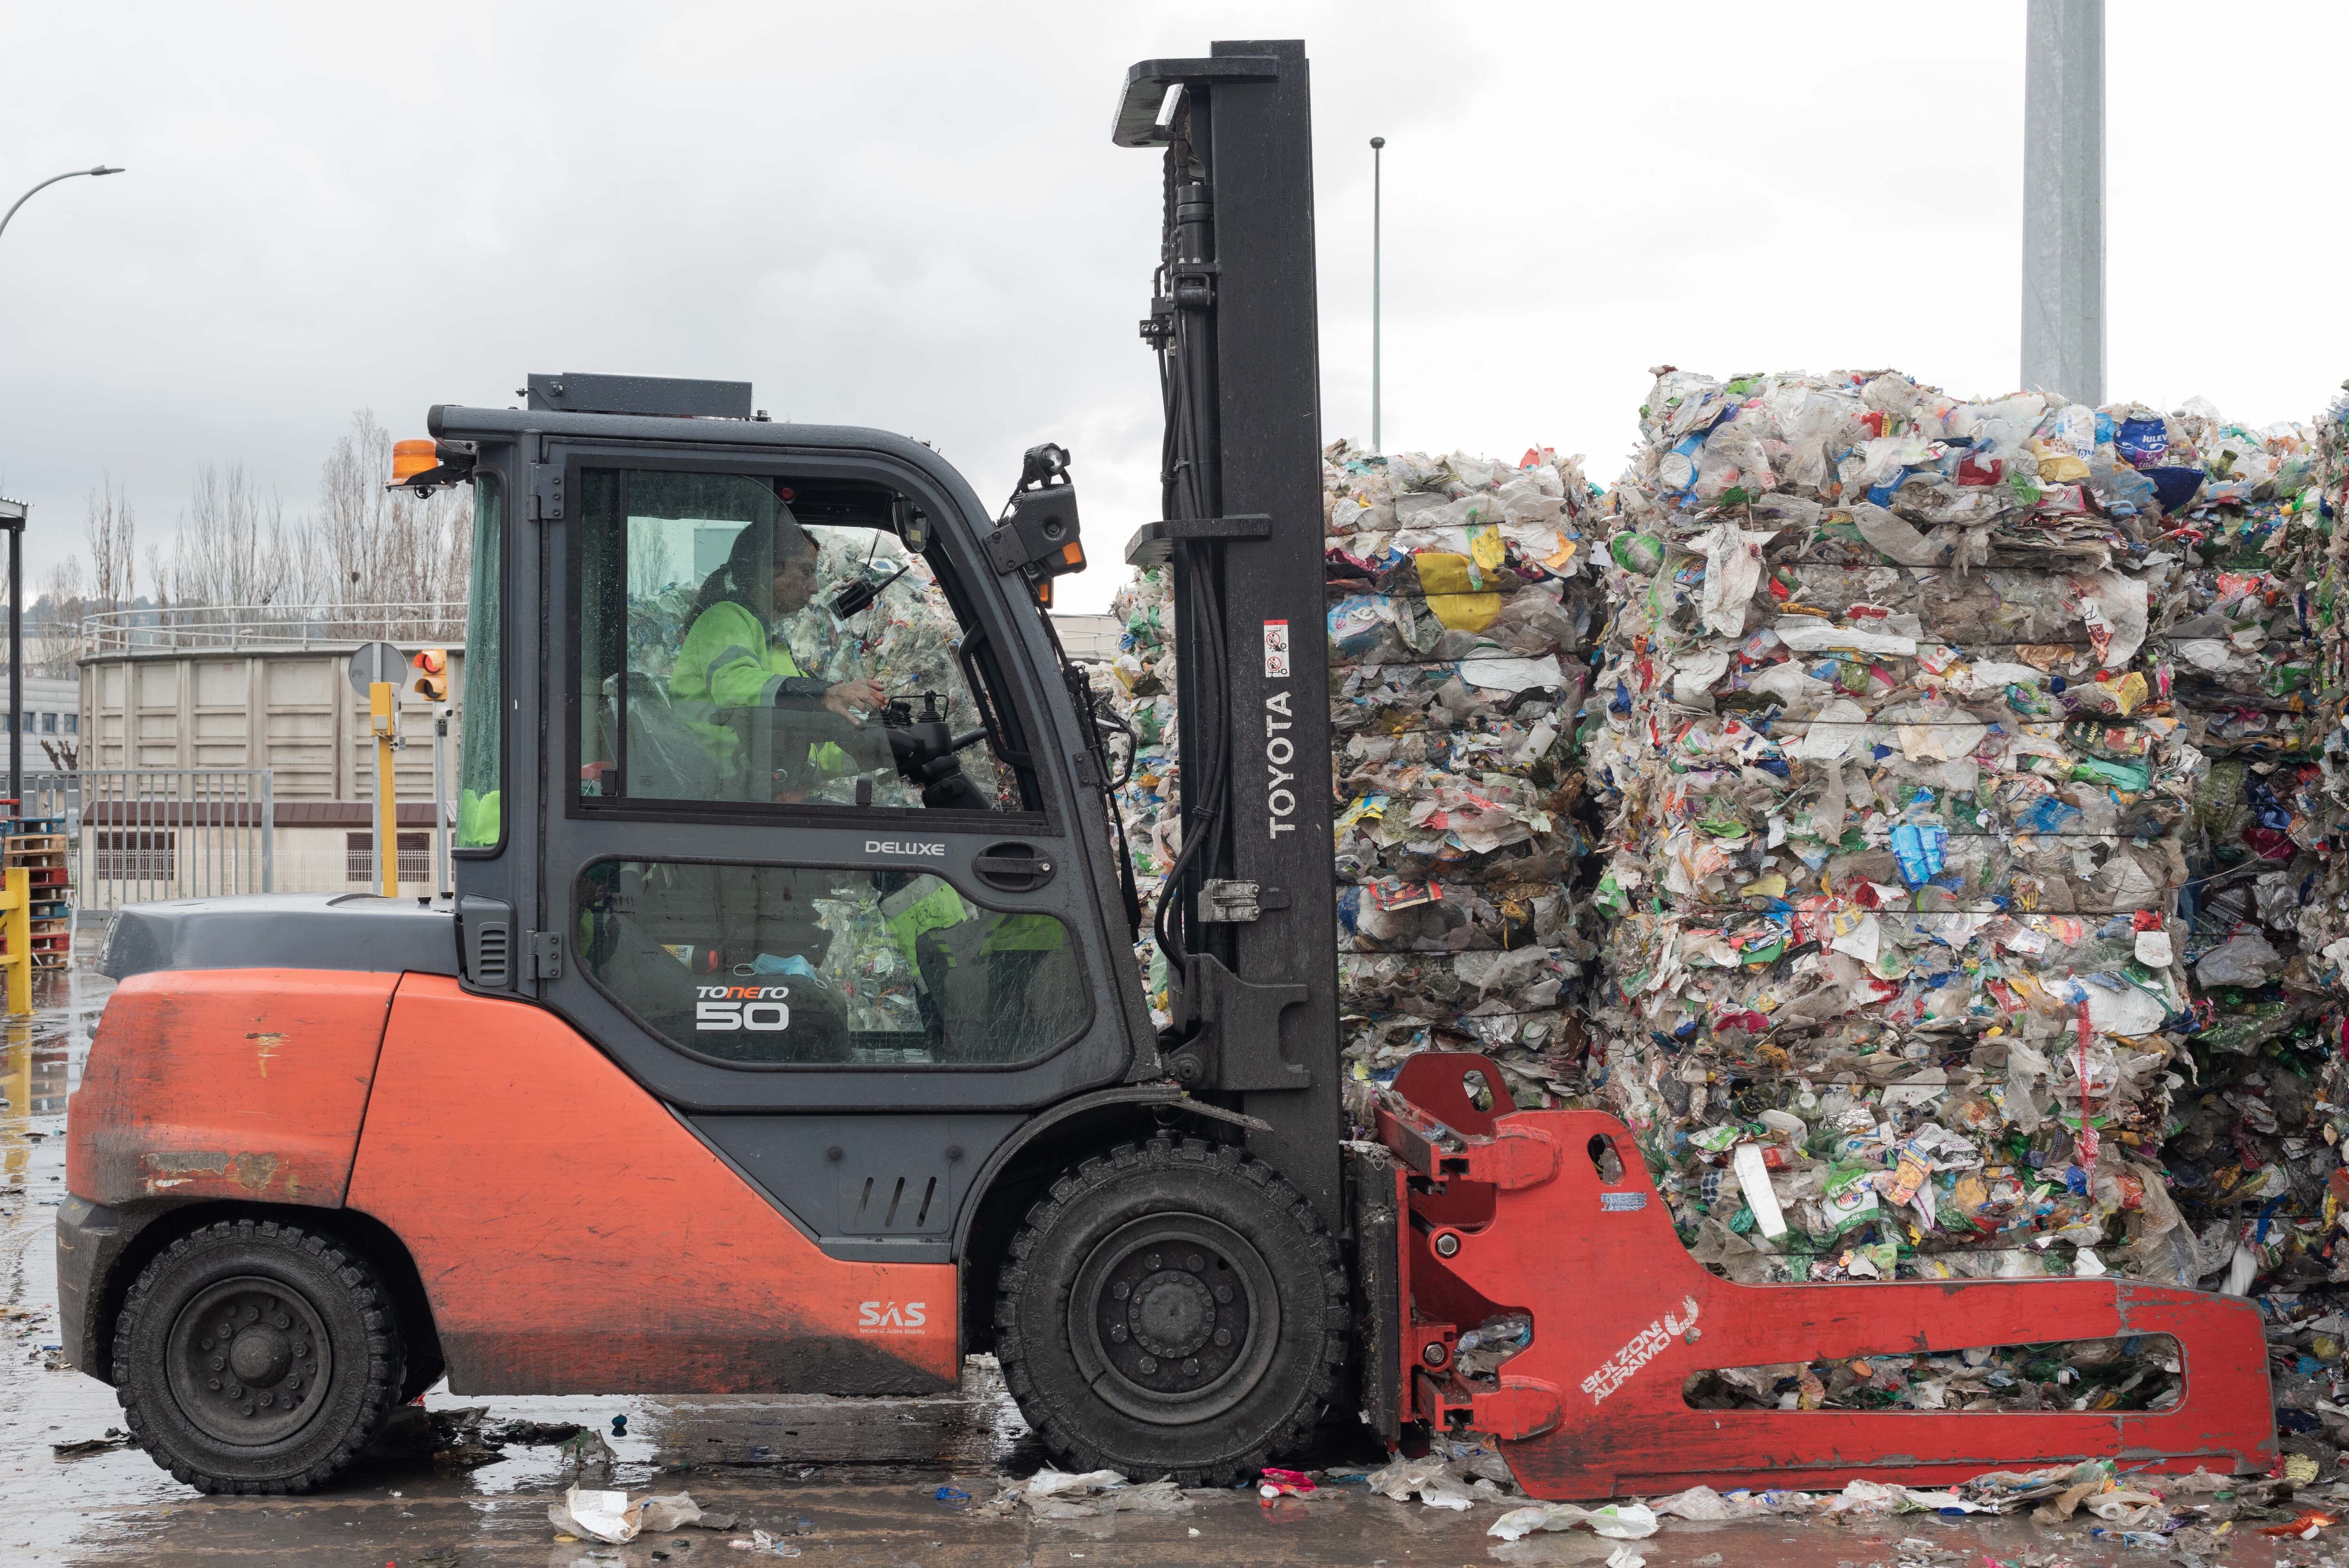 Los españoles ante el reciclaje: el 86% afirma que separa sus residuos, pero el 40% desconfía de que sean procesados correctamente